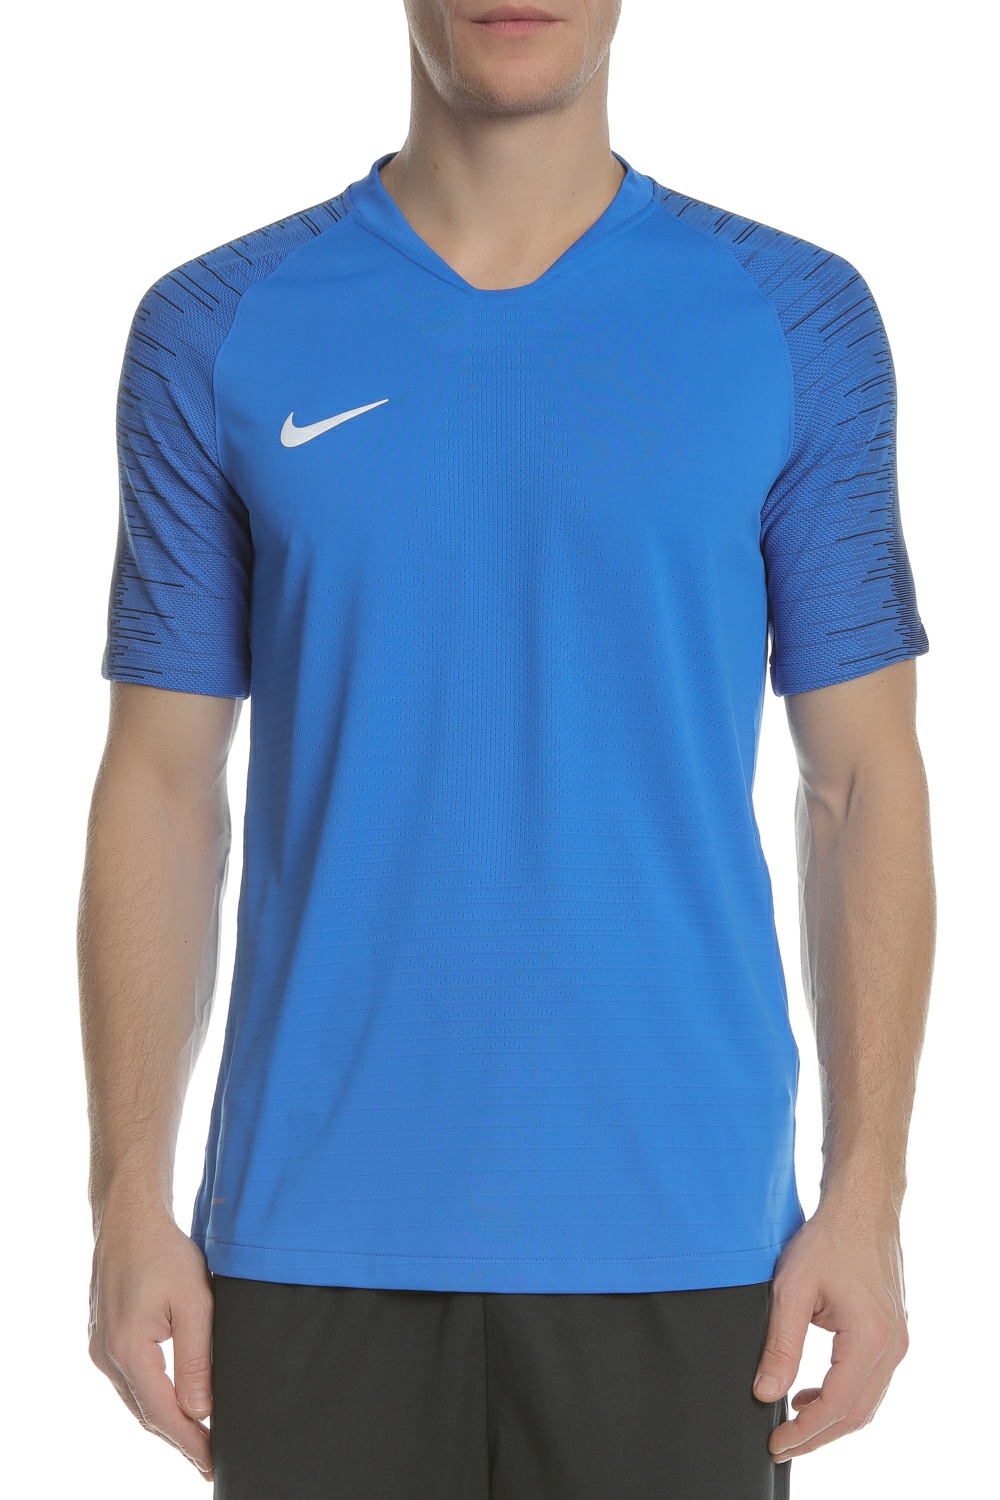 Ανδρικά/Ρούχα/Αθλητικά/T-shirt NIKE - Ανδρική μπλούζα Nike VaporKnit II μπλε